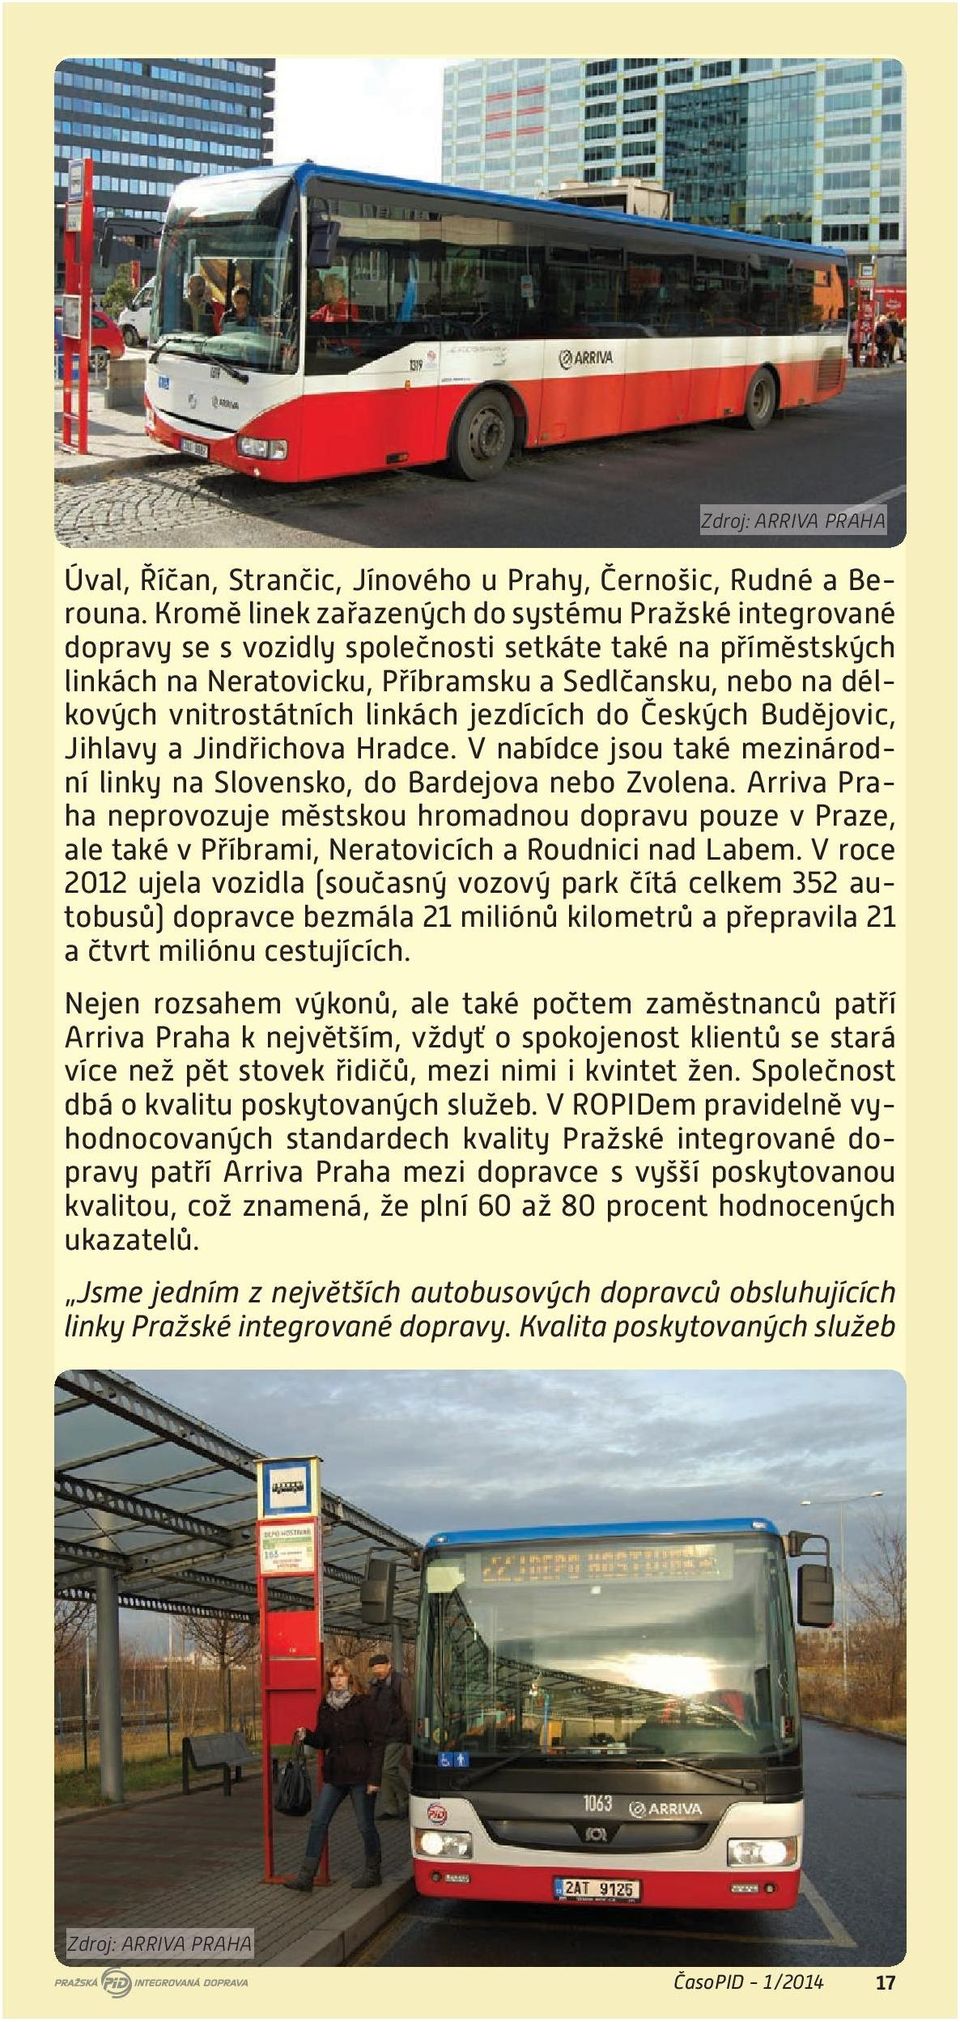 linkách jezdících do Českých Budějovic, Jihlavy a Jindřichova Hradce. V nabídce jsou také mezinárodní linky na Slovensko, do Bardejova nebo Zvolena.